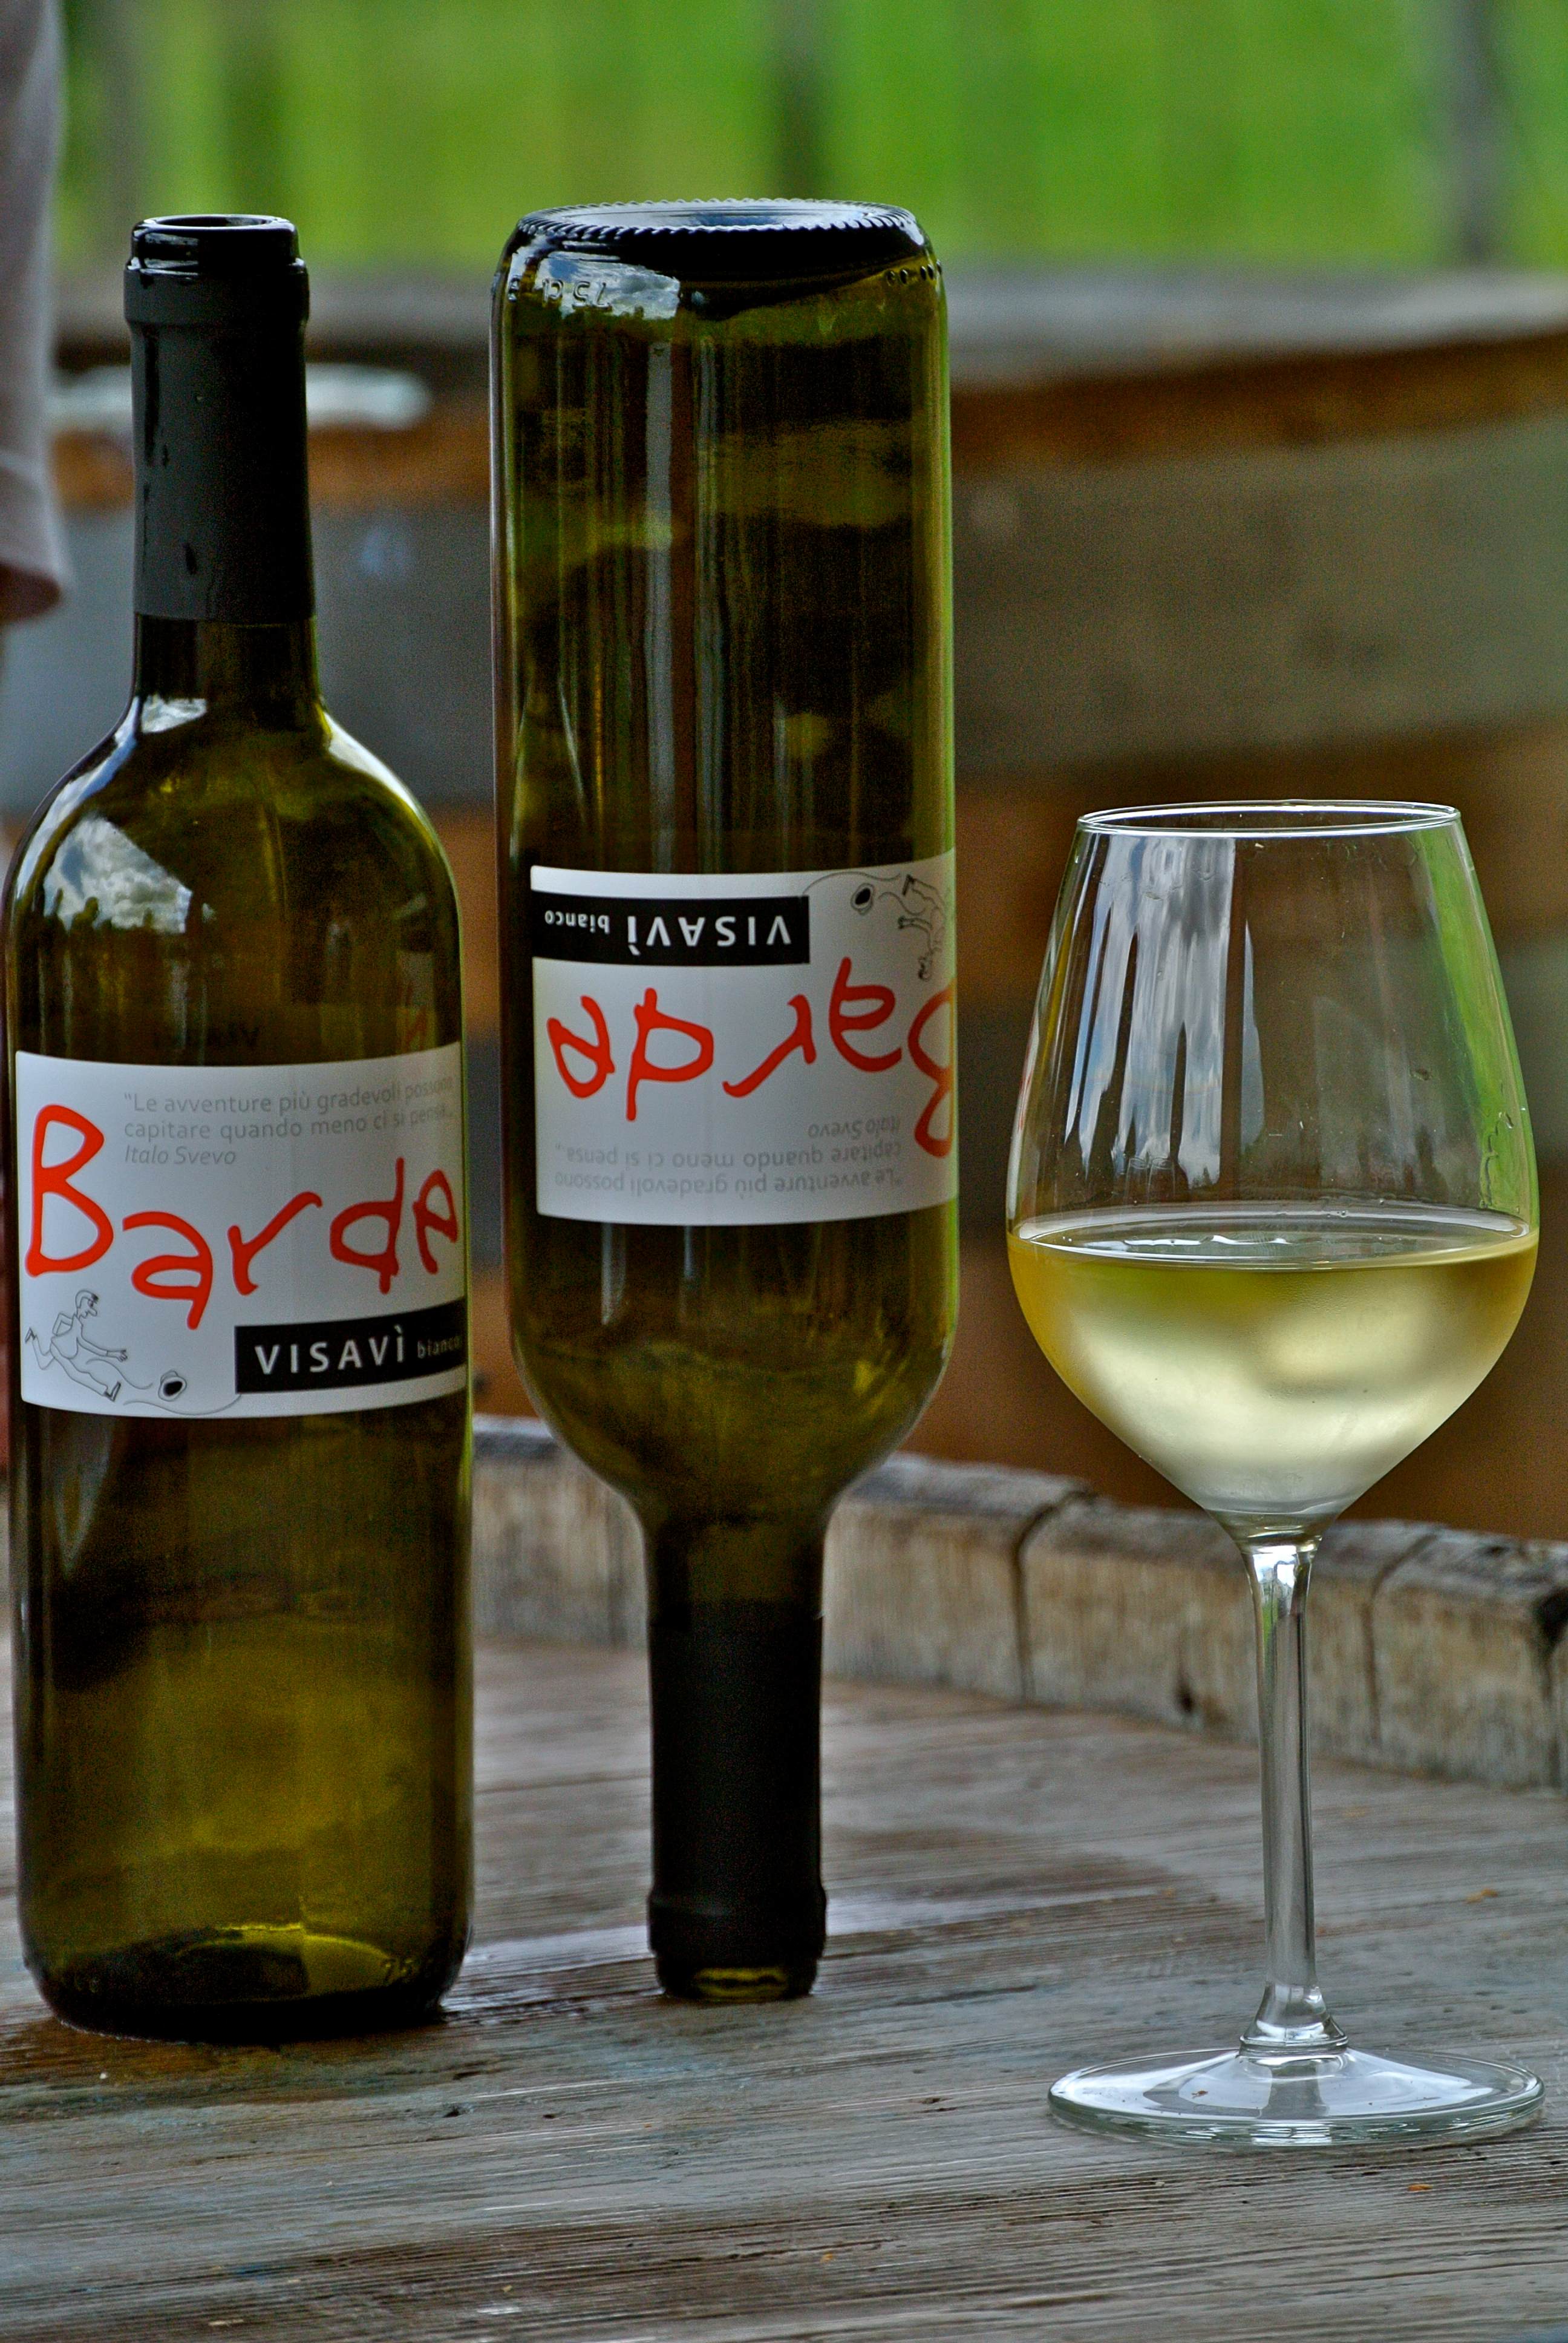 Visavi VinjaBarde wines byParovel